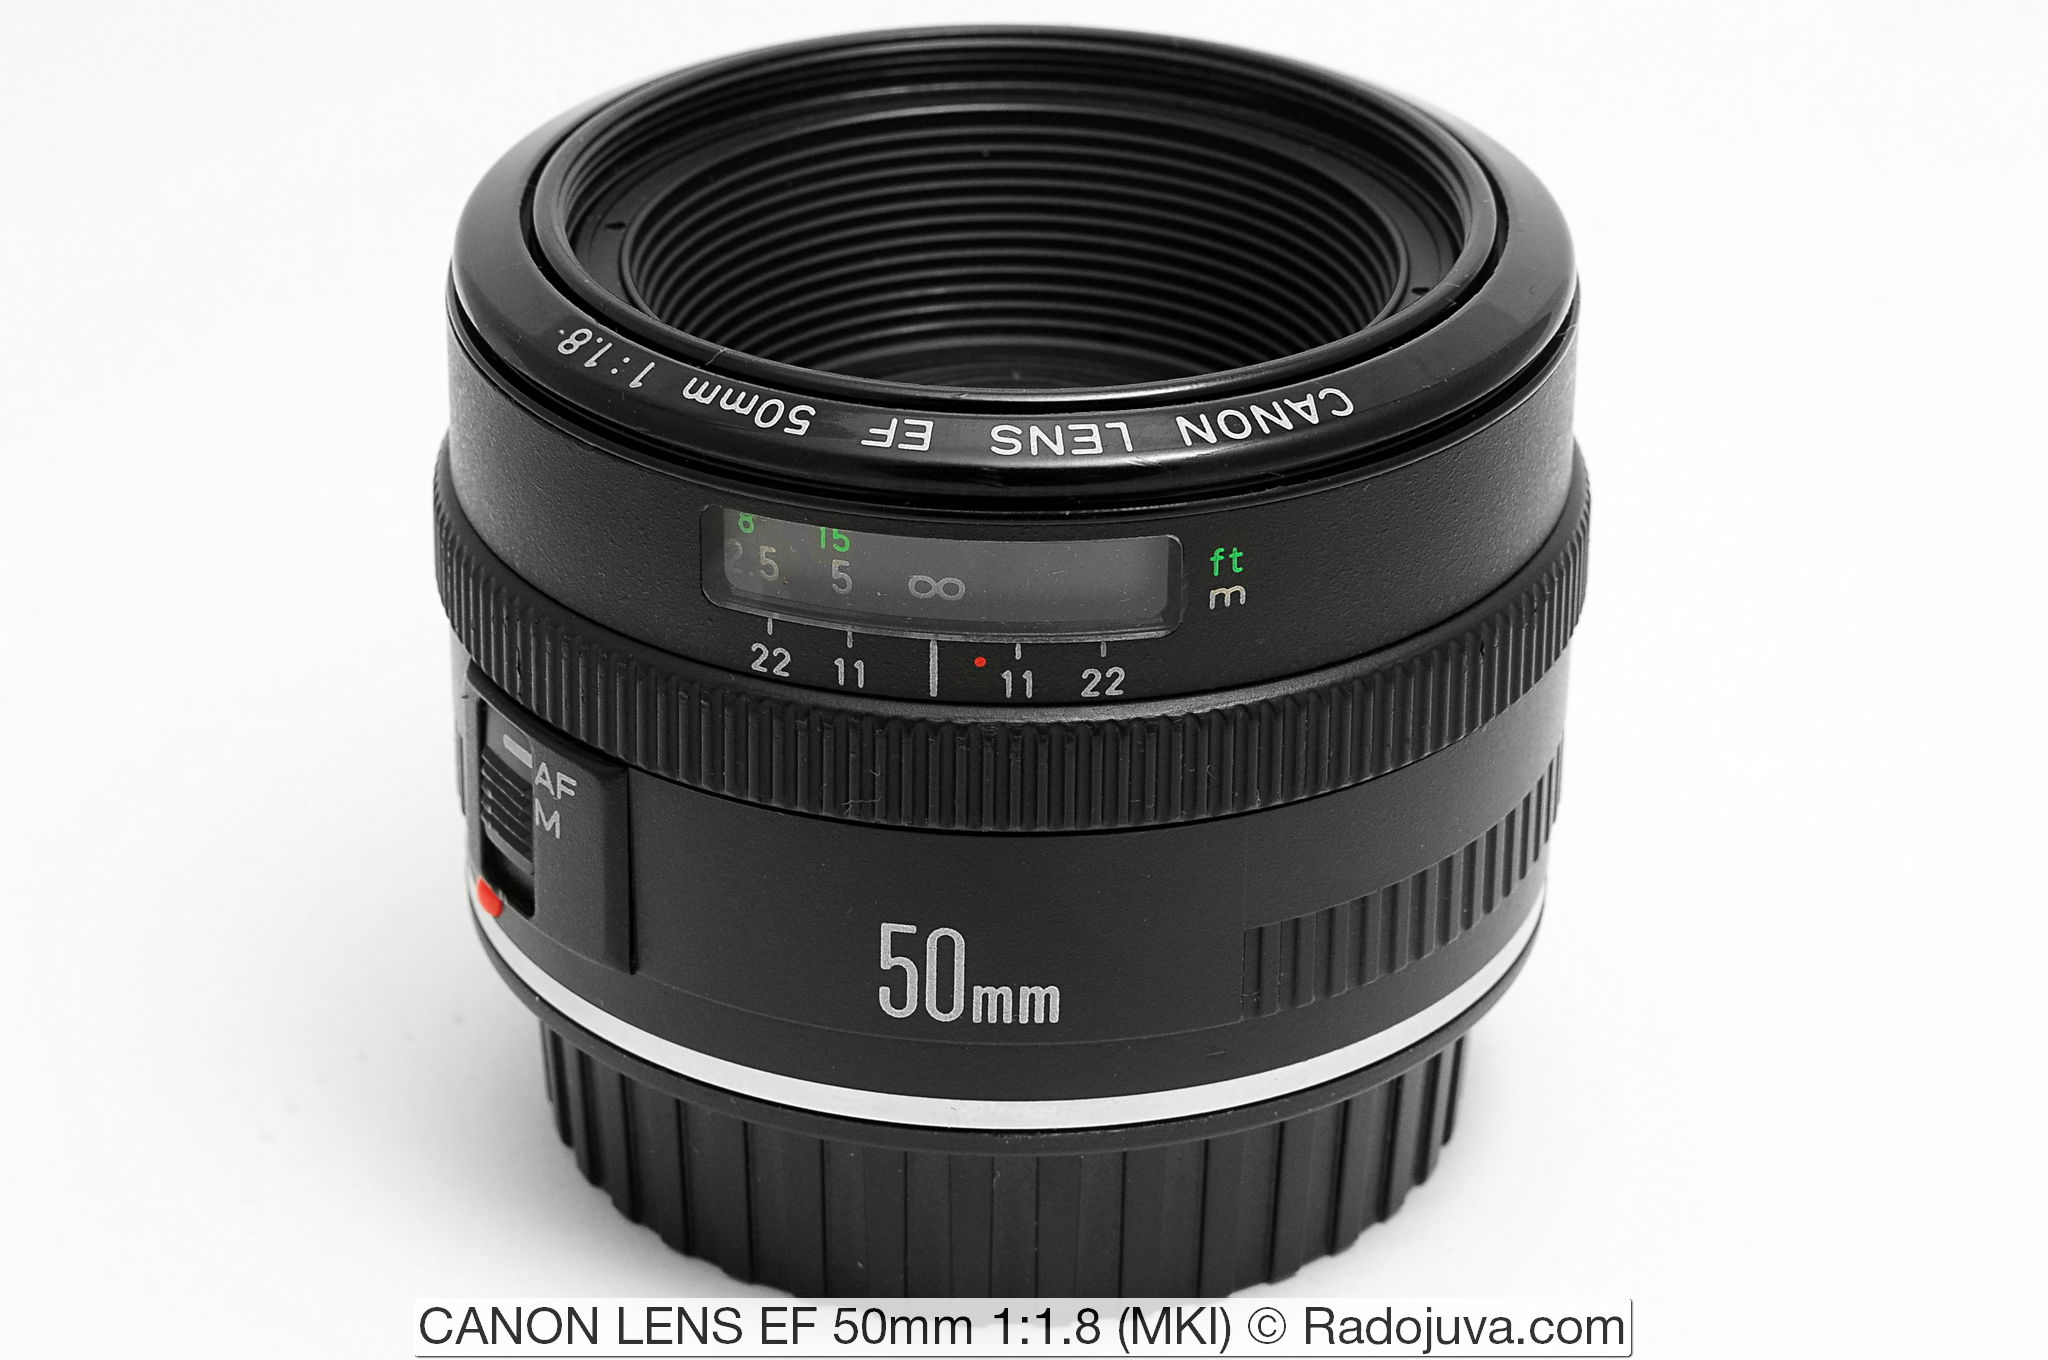 CANON LENS EF 50mm 1:1.8 (MKI)